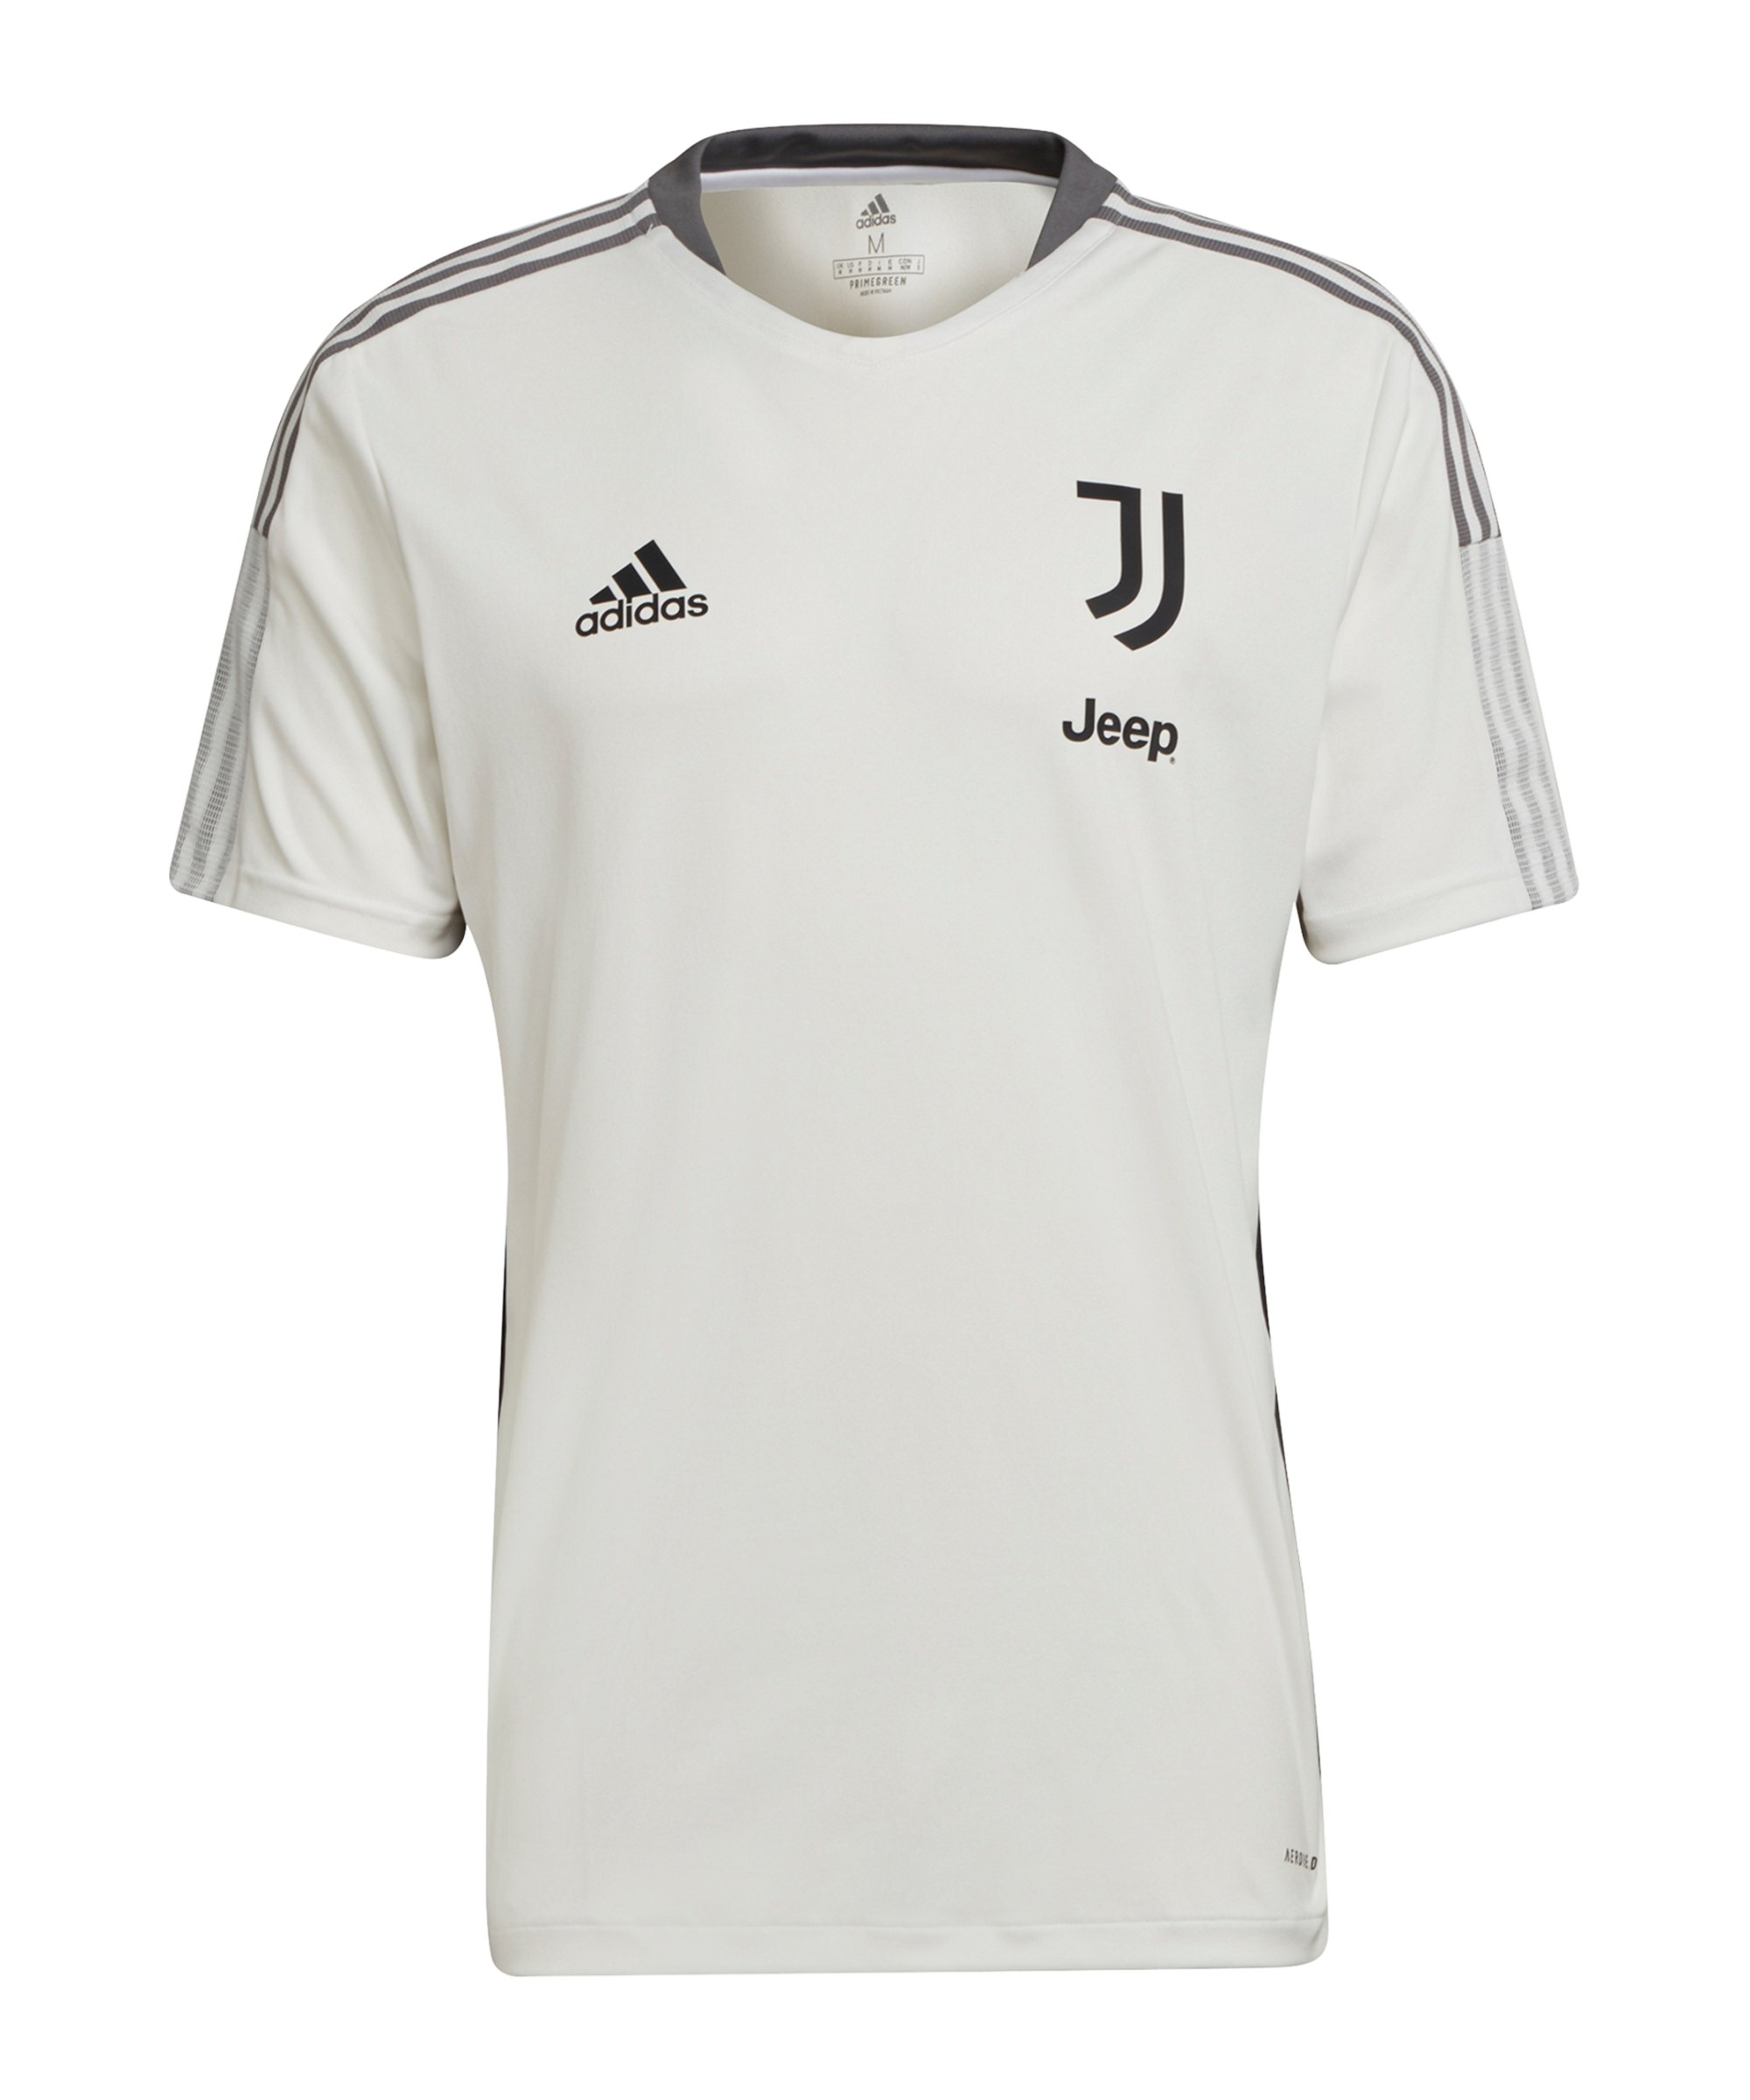 adidas Juventus Turin Trainingsshirt Weiss - weiss